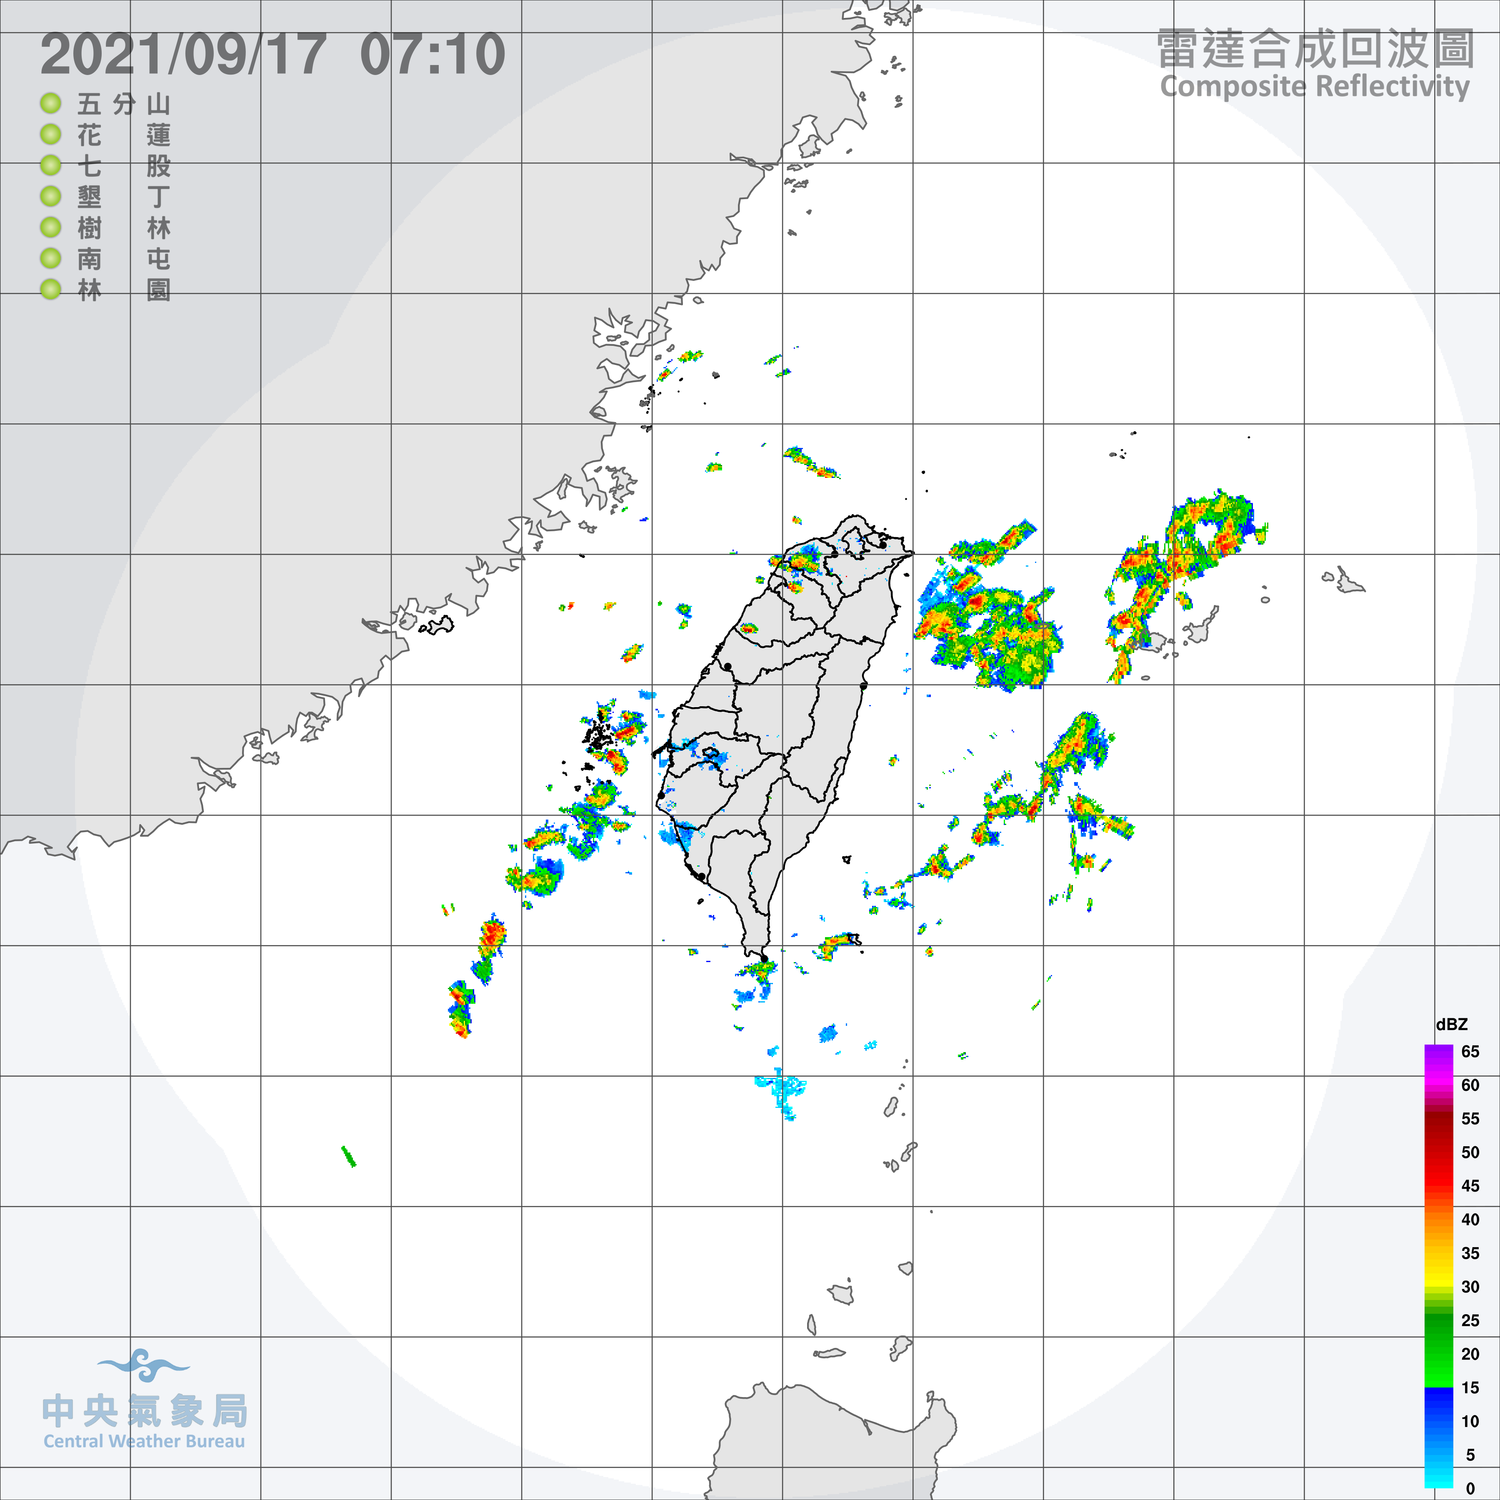 中央氣象局長鄭明典在臉書表示，今天台灣周邊上空仍有對流雲，還是有局部陣雨發生機率，不過趨勢上是越來越穩定。   圖：中央氣象局長/提供